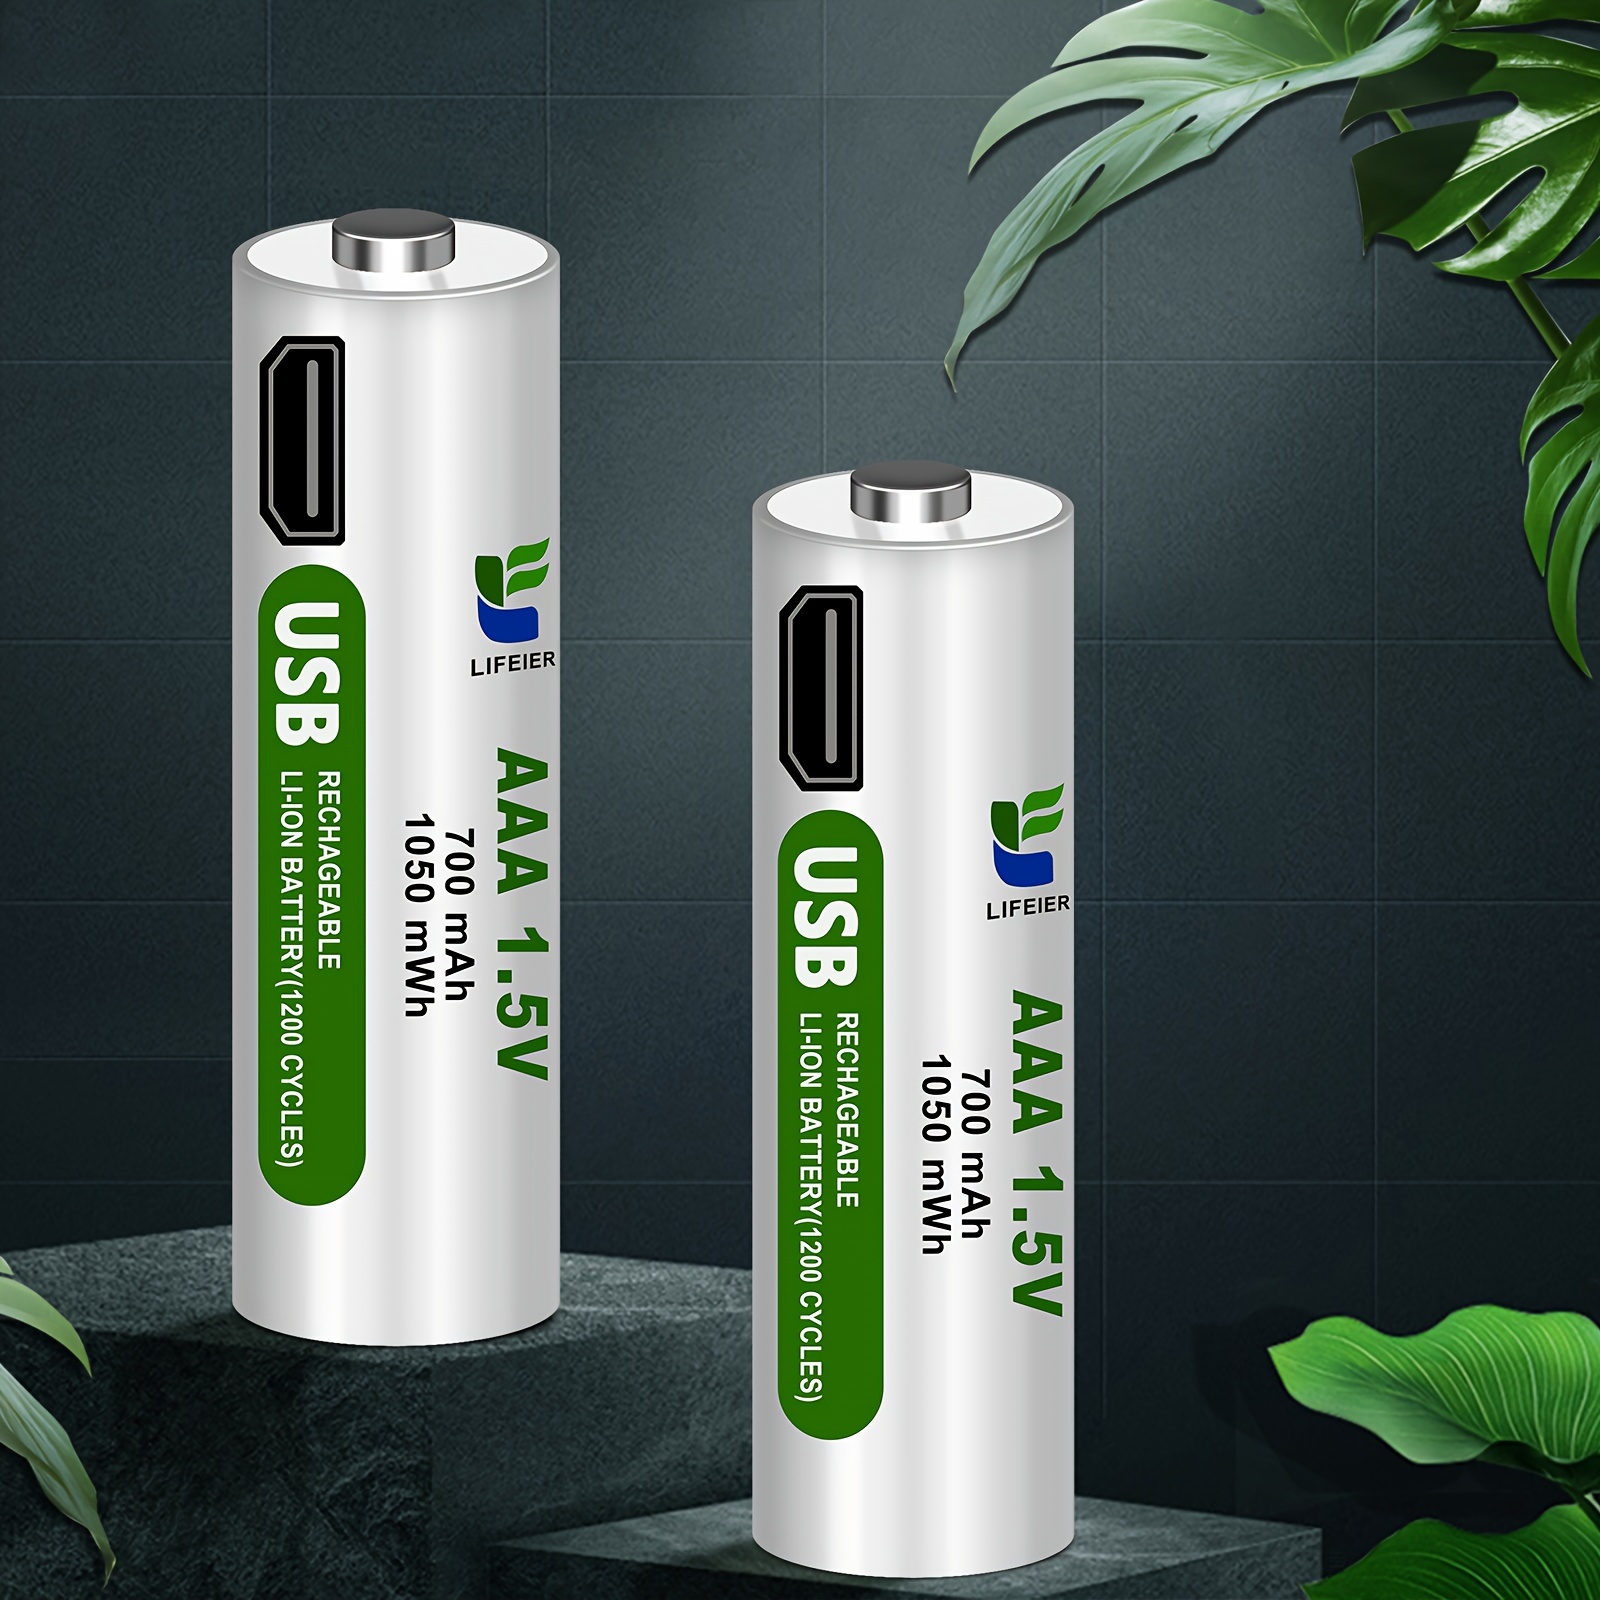 Chargeur rapide BC4 pour batterie rechargeable Li-Ion 1,5V et batterie  rechargeable 1,5V NiMH 1,2V AA AAA, avec câble de charge micro-USB, Pour  pile AA / AAA, Chargeurs pour batteries individuelles